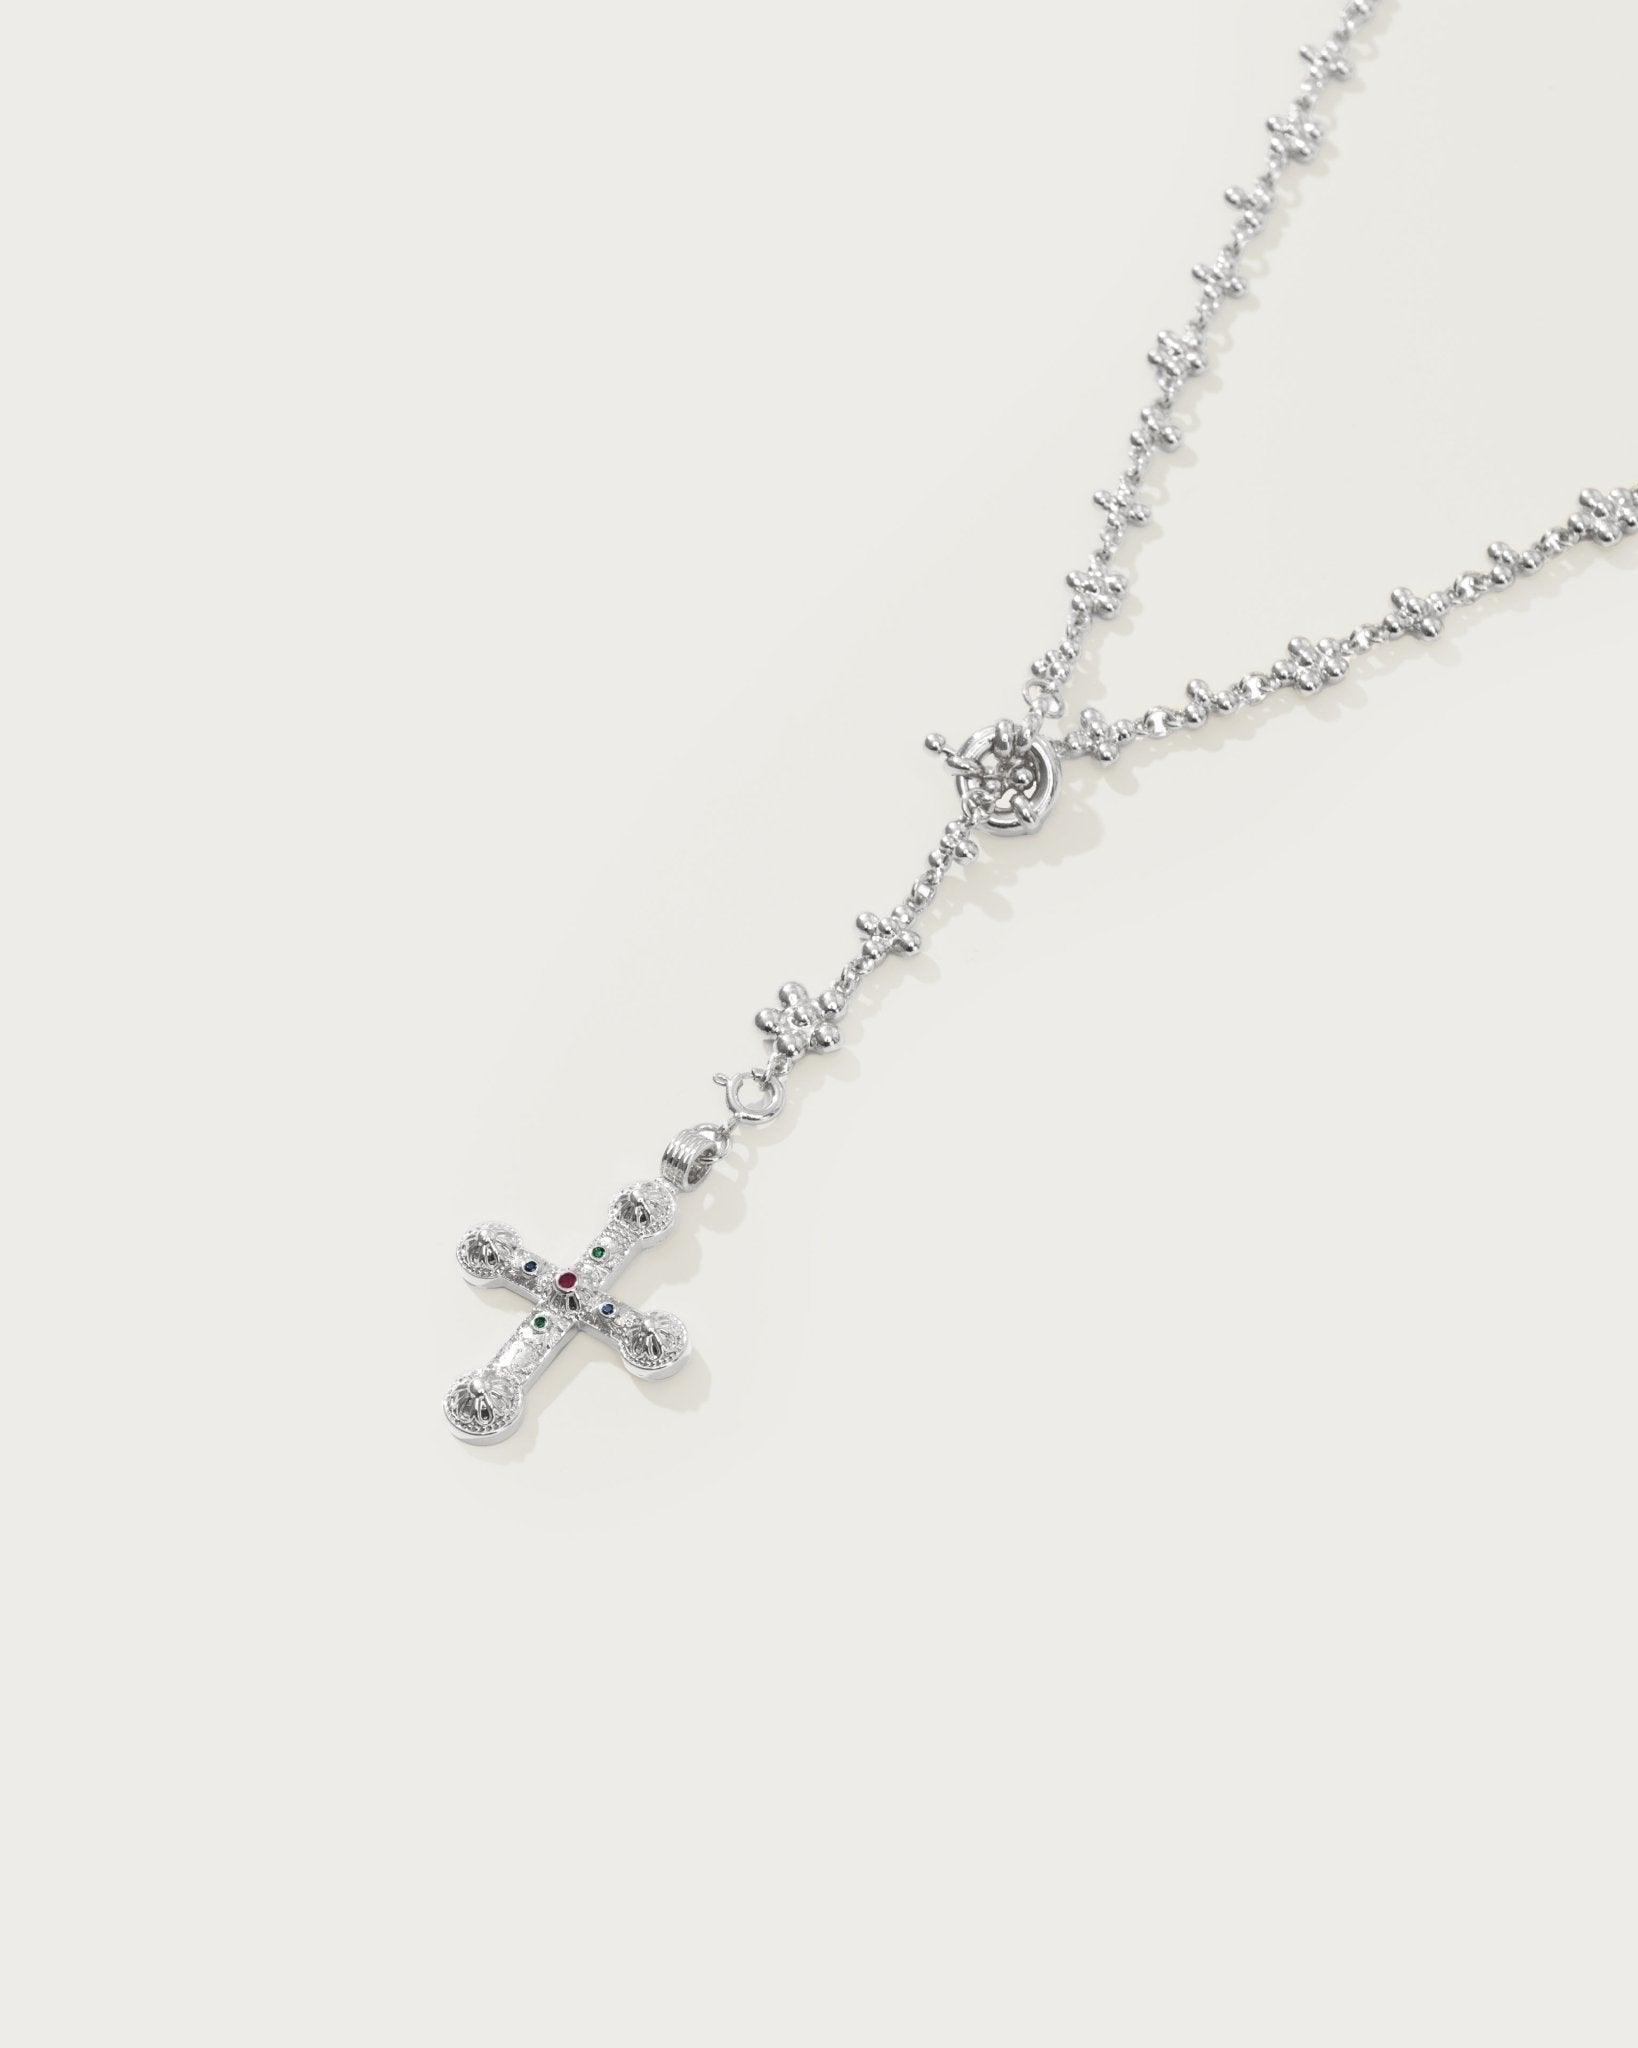 Daisy Molecule Chain in Silver - En Route Jewelry